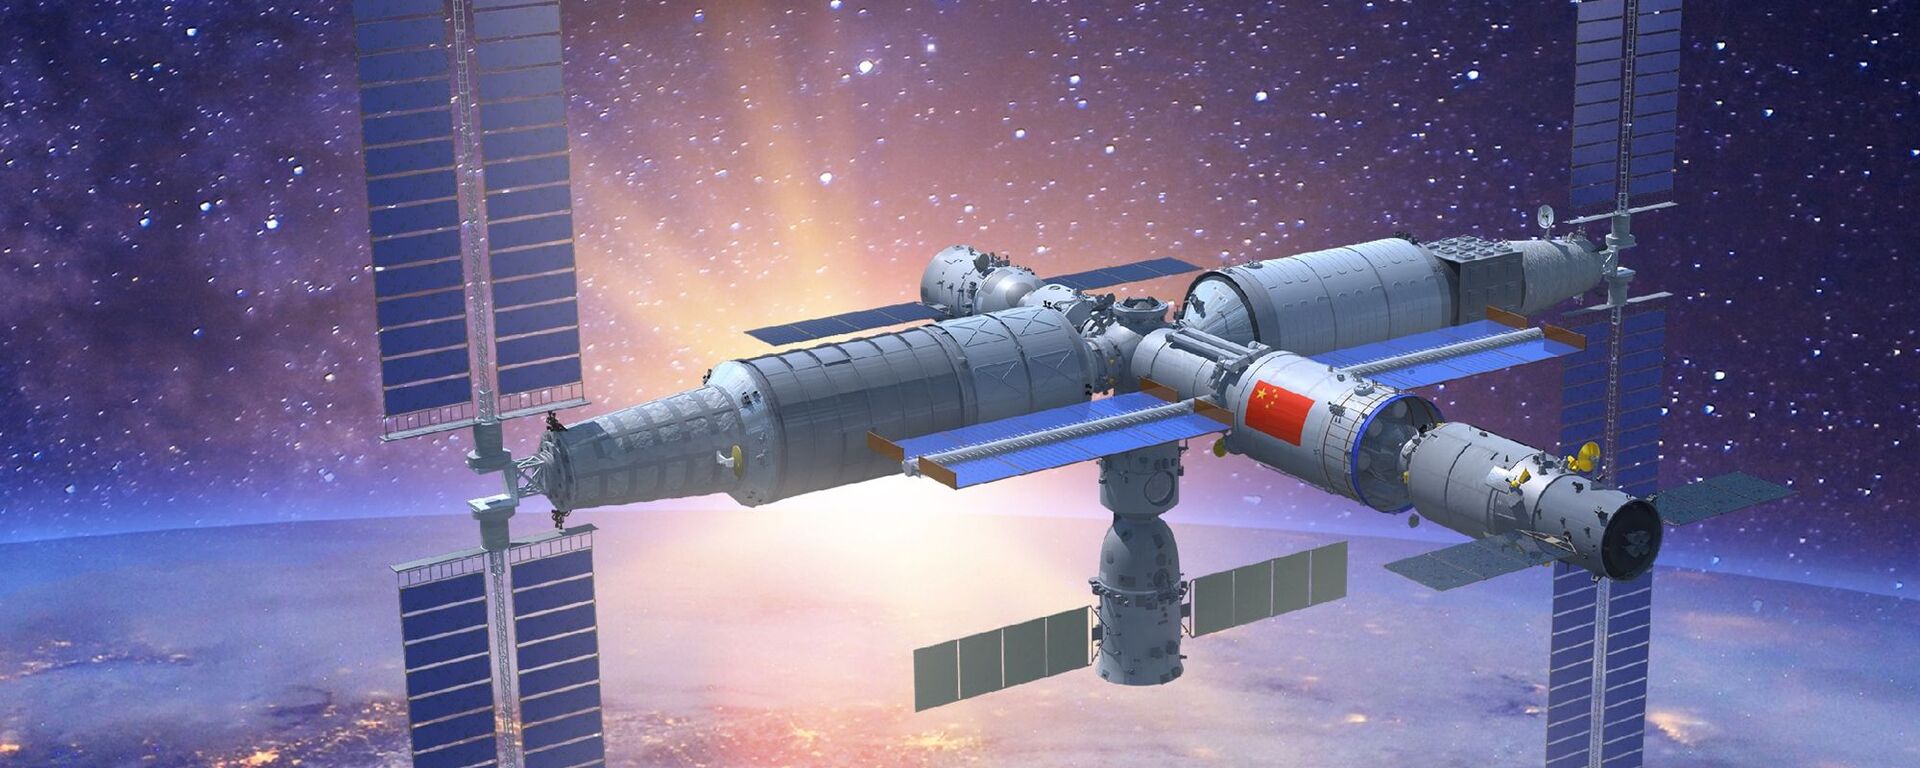 Representação em 3D da estação espacial Tiangong com todos os módulos instalados - Sputnik Brasil, 1920, 24.11.2022